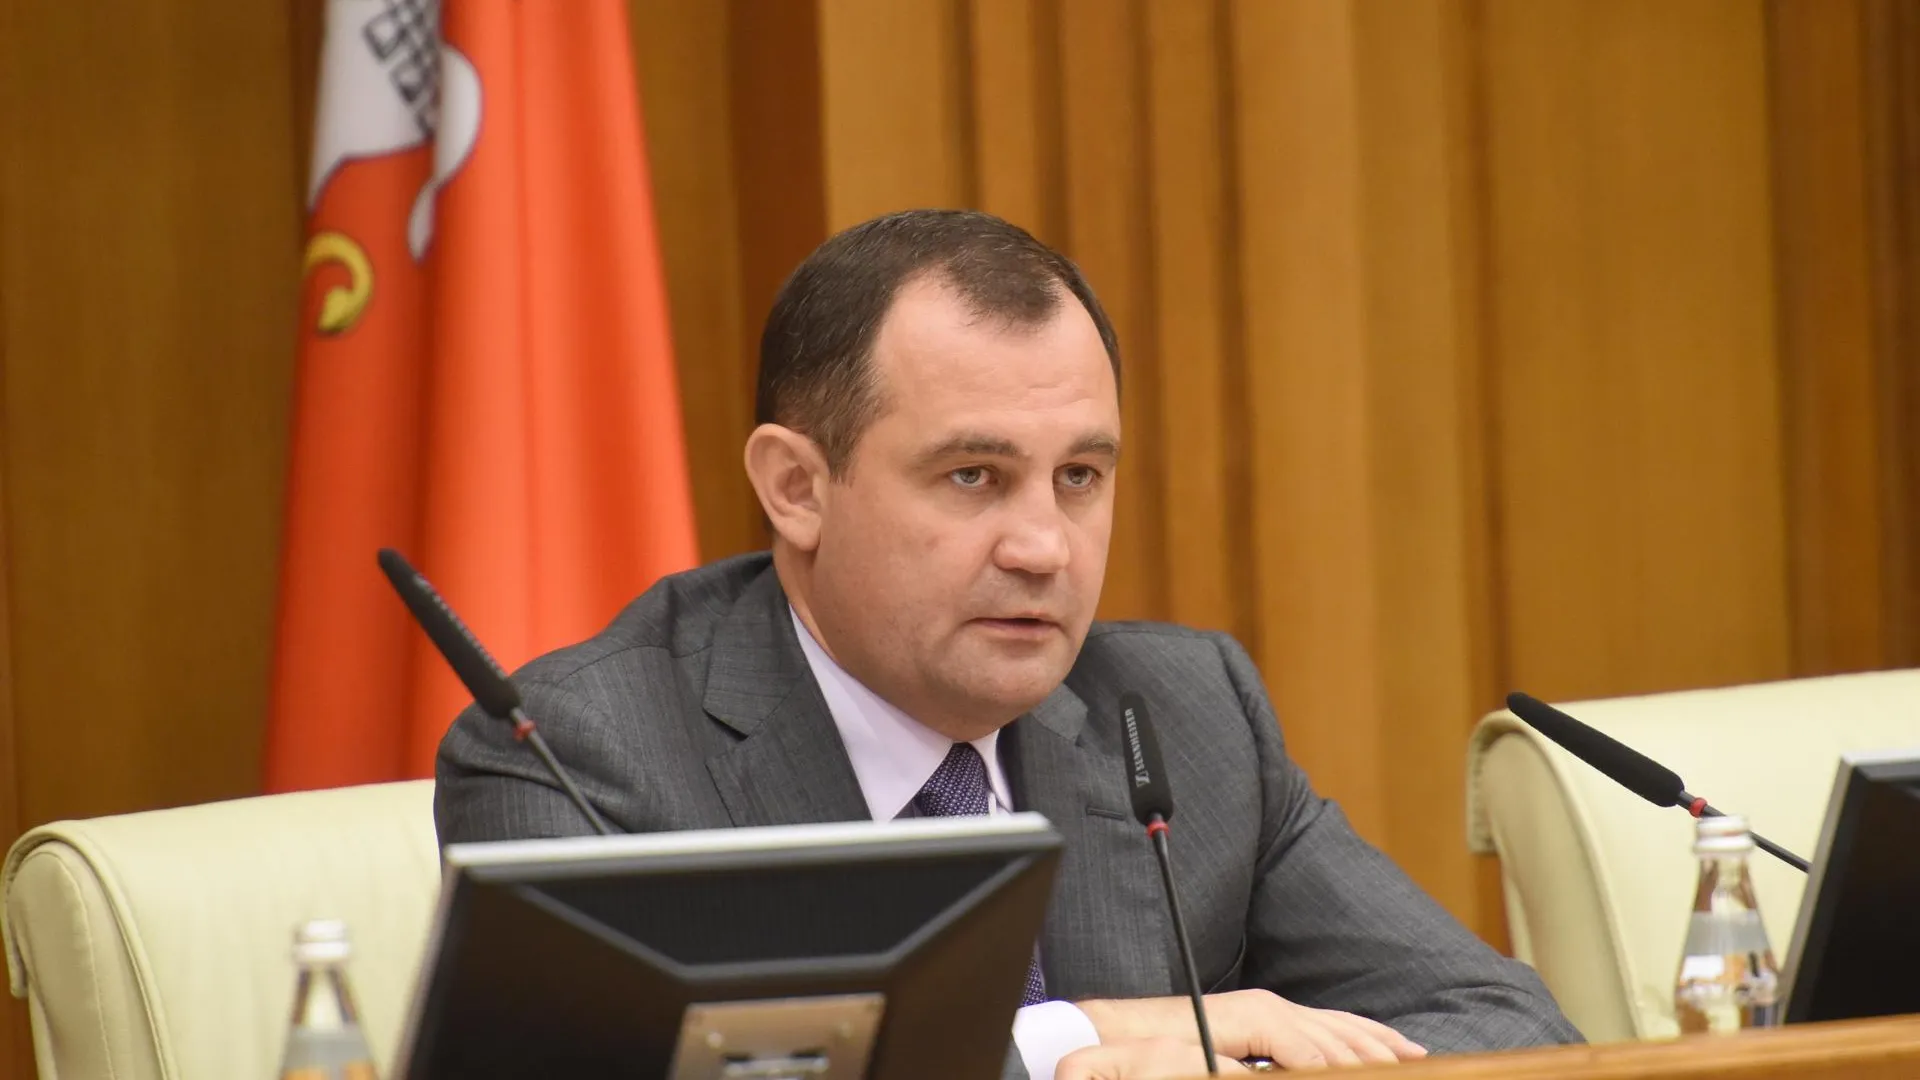 15 депутатов Мособлдумы получили благодарности губернатора Подмосковья